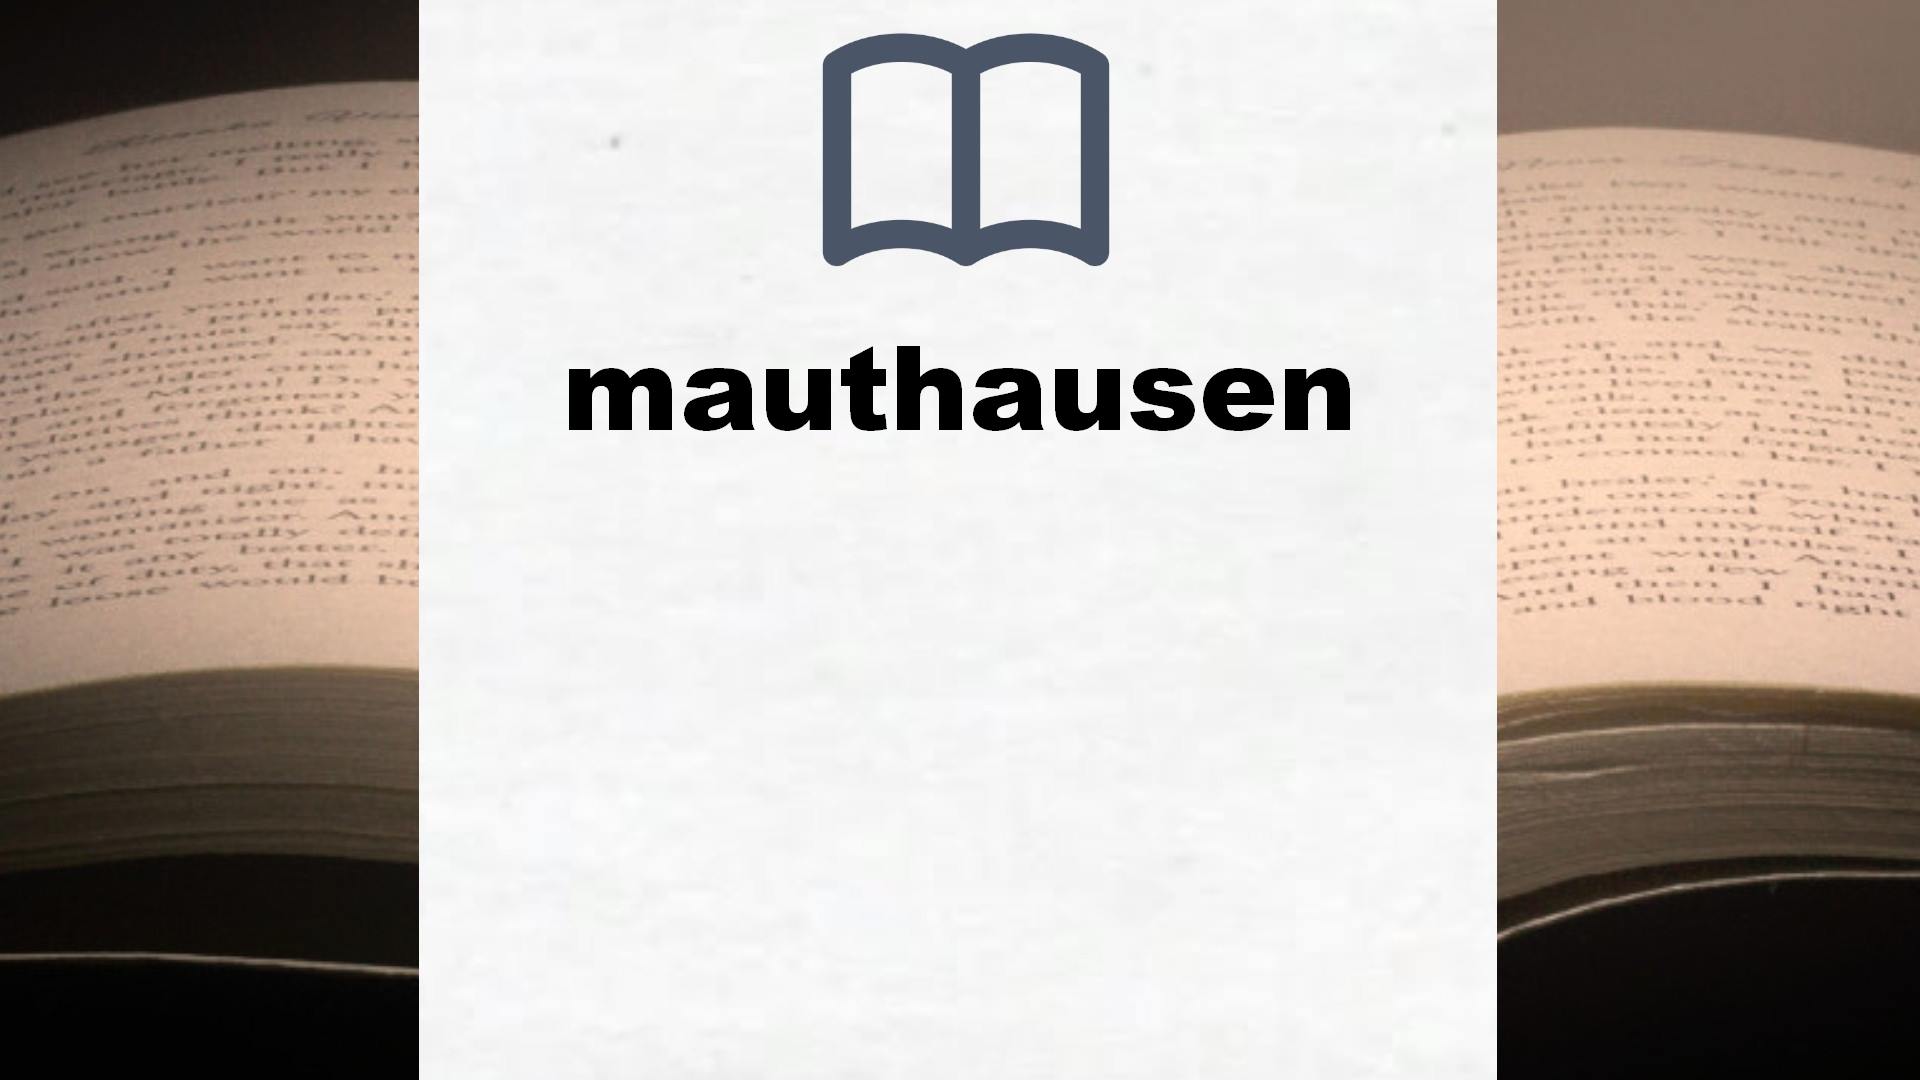 Libros sobre mauthausen